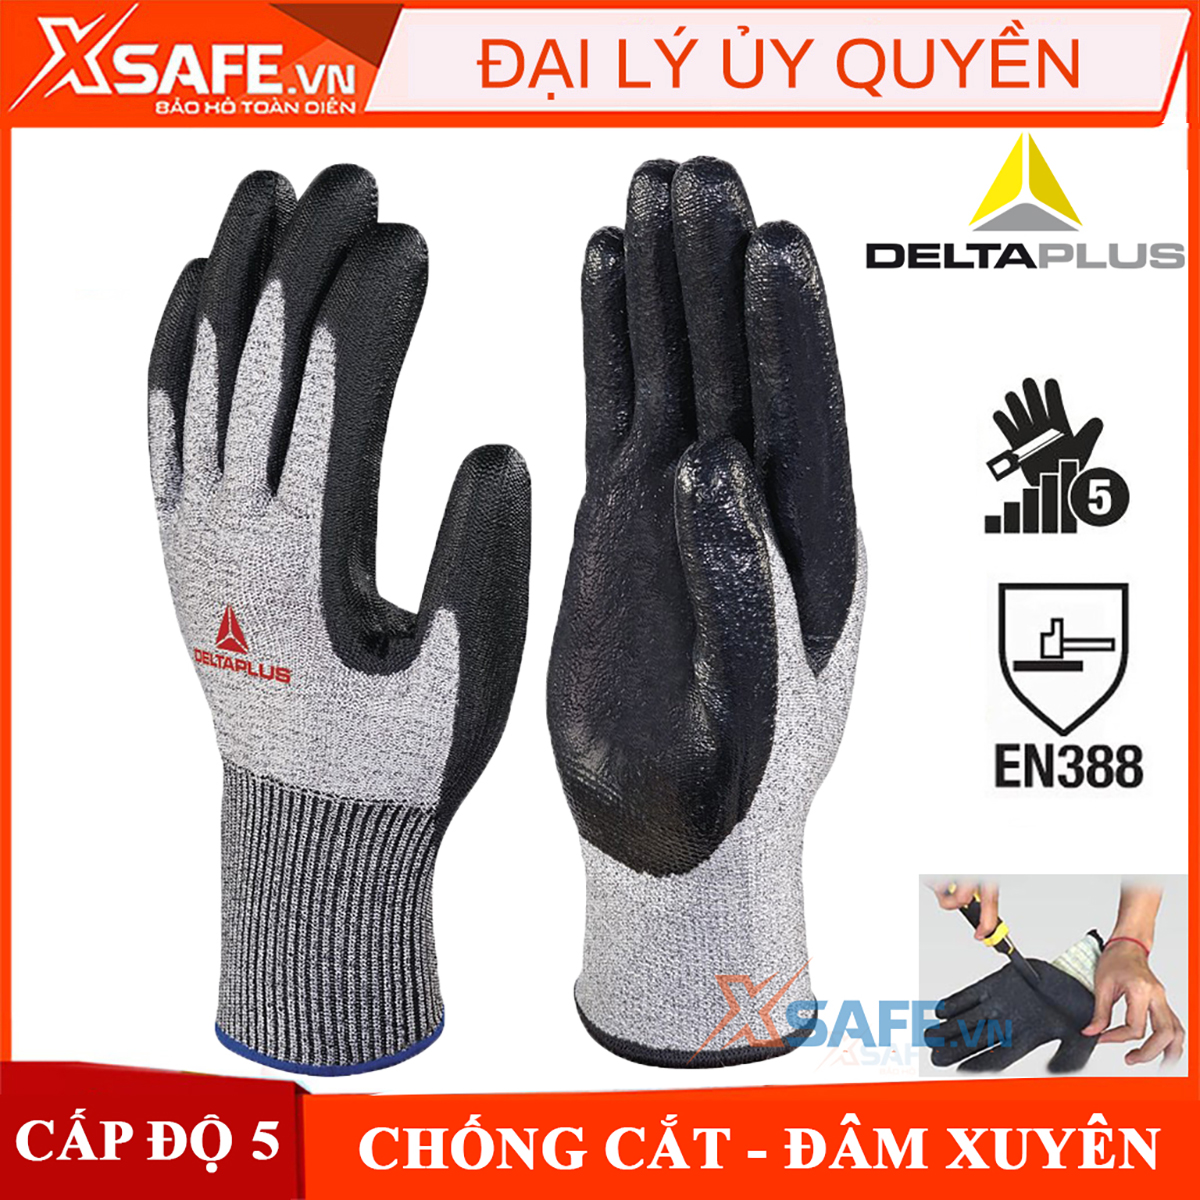 Găng tay chống cắt DeltaPlus Venicut 44 G3 cấp độ 4, độ khéo léo cao phủ nitril chống dầu nhớt dùng cho cơ khí, kỹ thuật